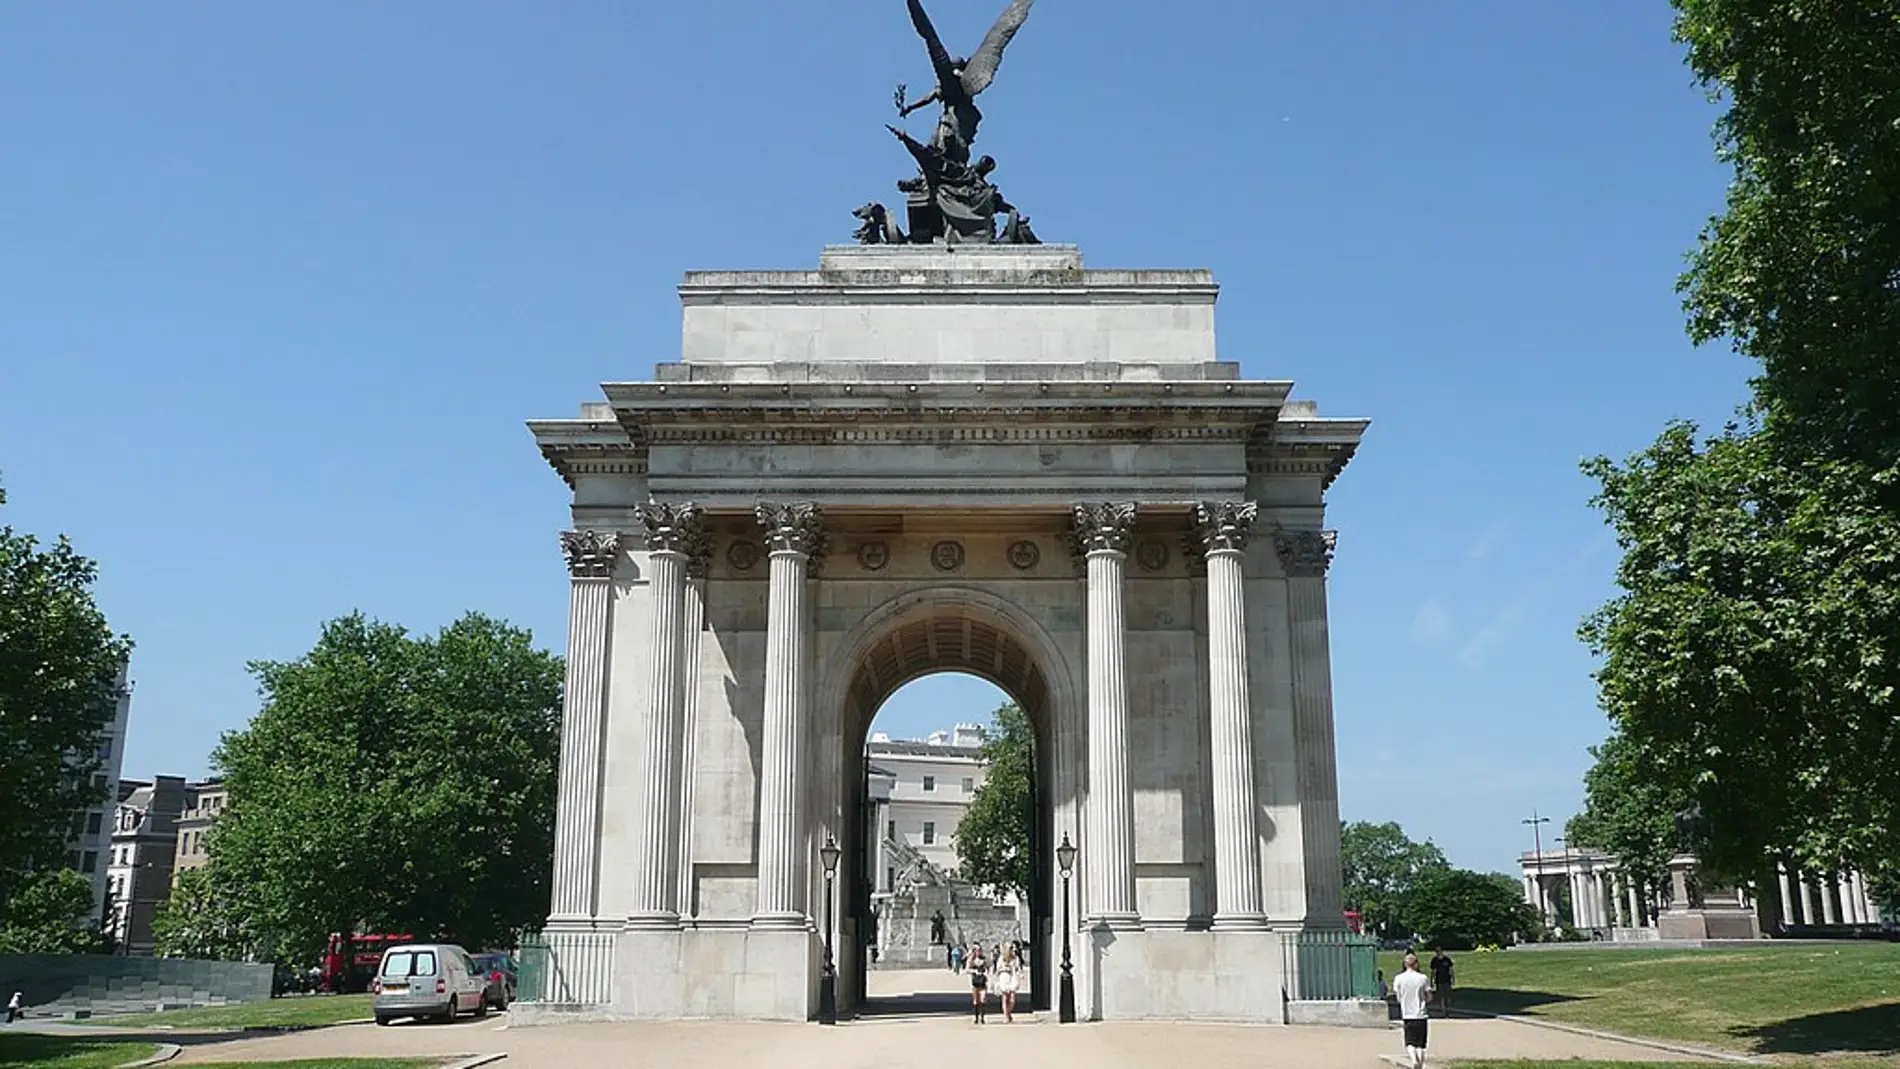 Arco de Wellington de Londres: ¿Sabías que, originalmente, no se encontraba en Hyde Park Corner?